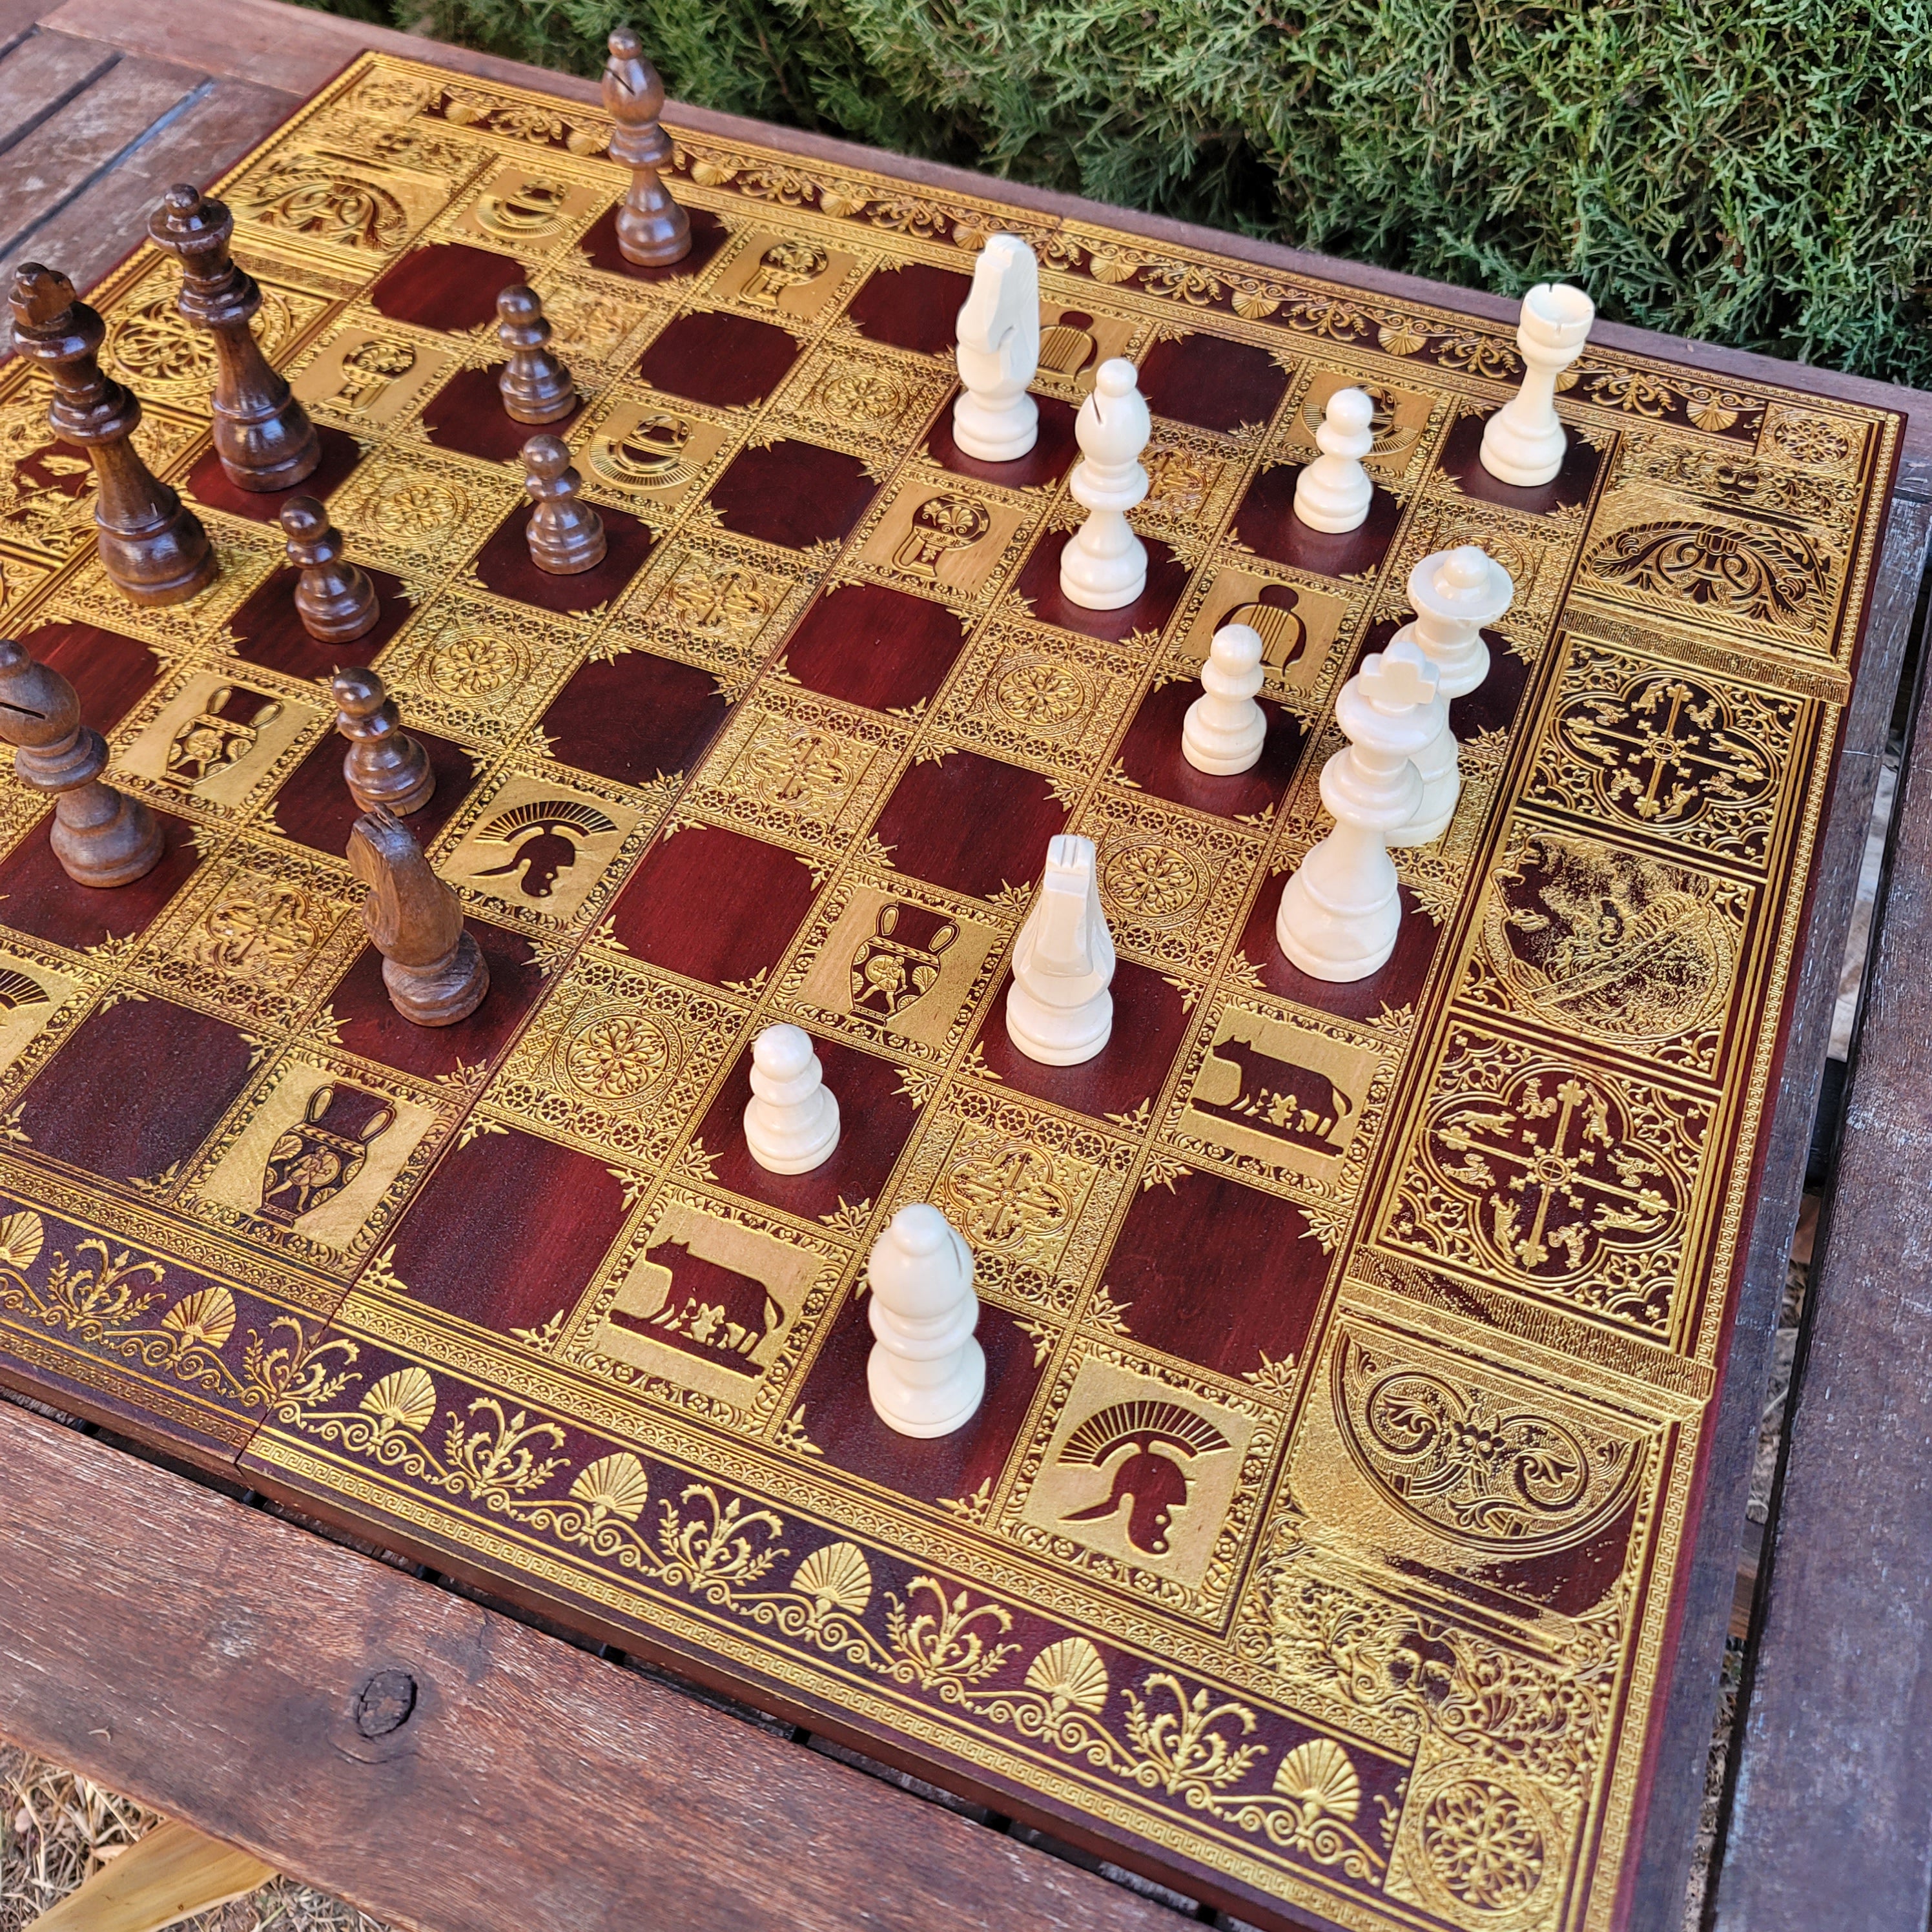 Unique Chessboards